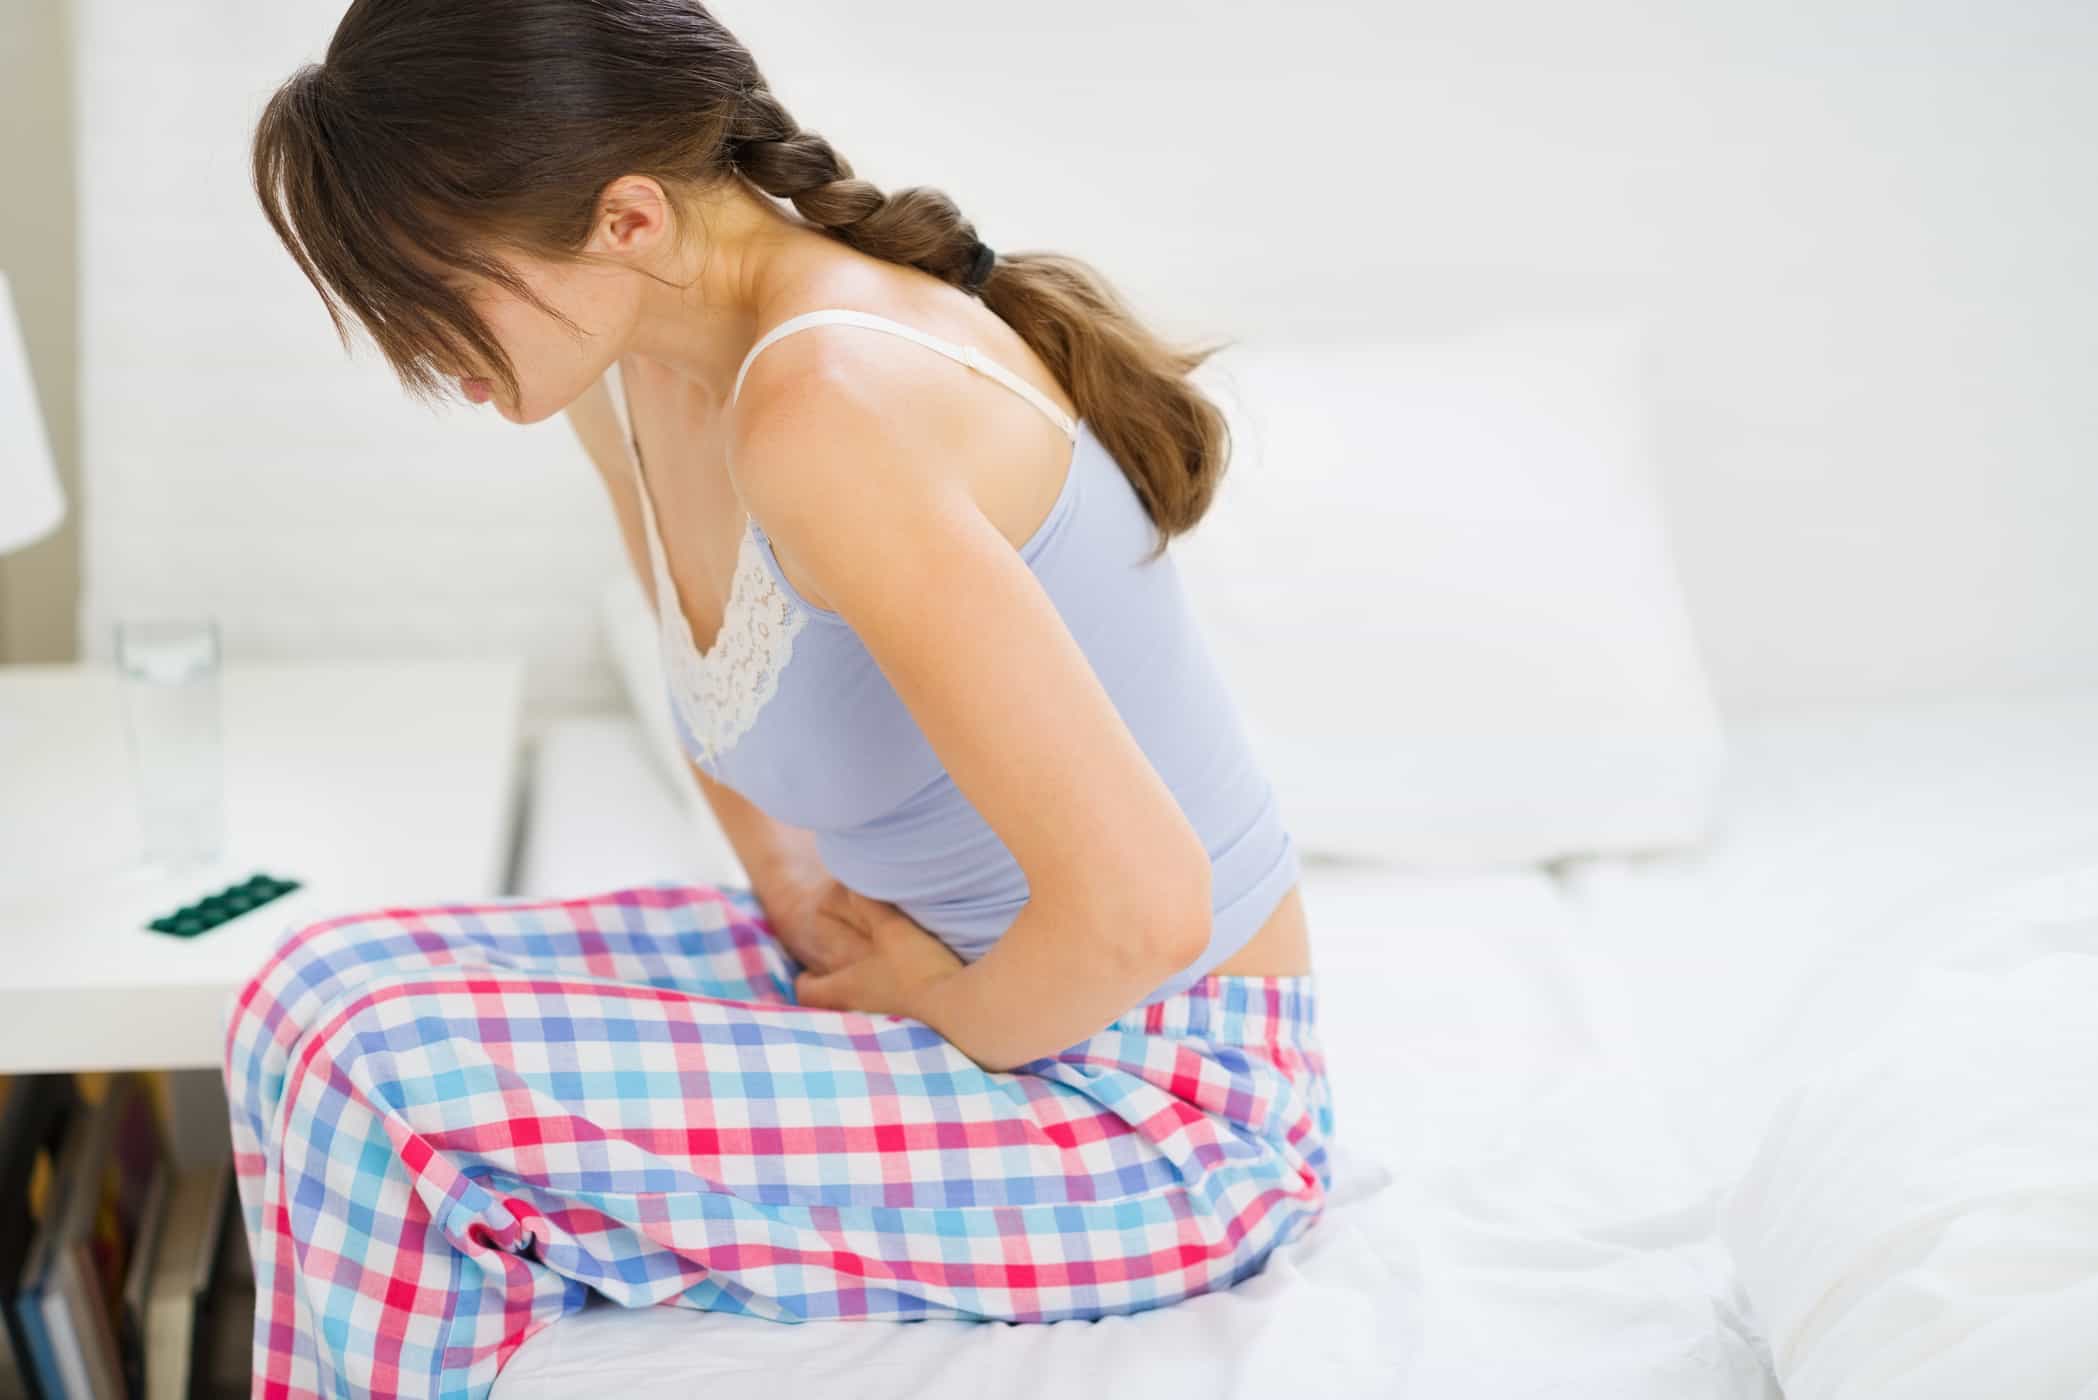 6 менструални проблеми, които трябва да бъдат проверени от лекар, и възможни причини